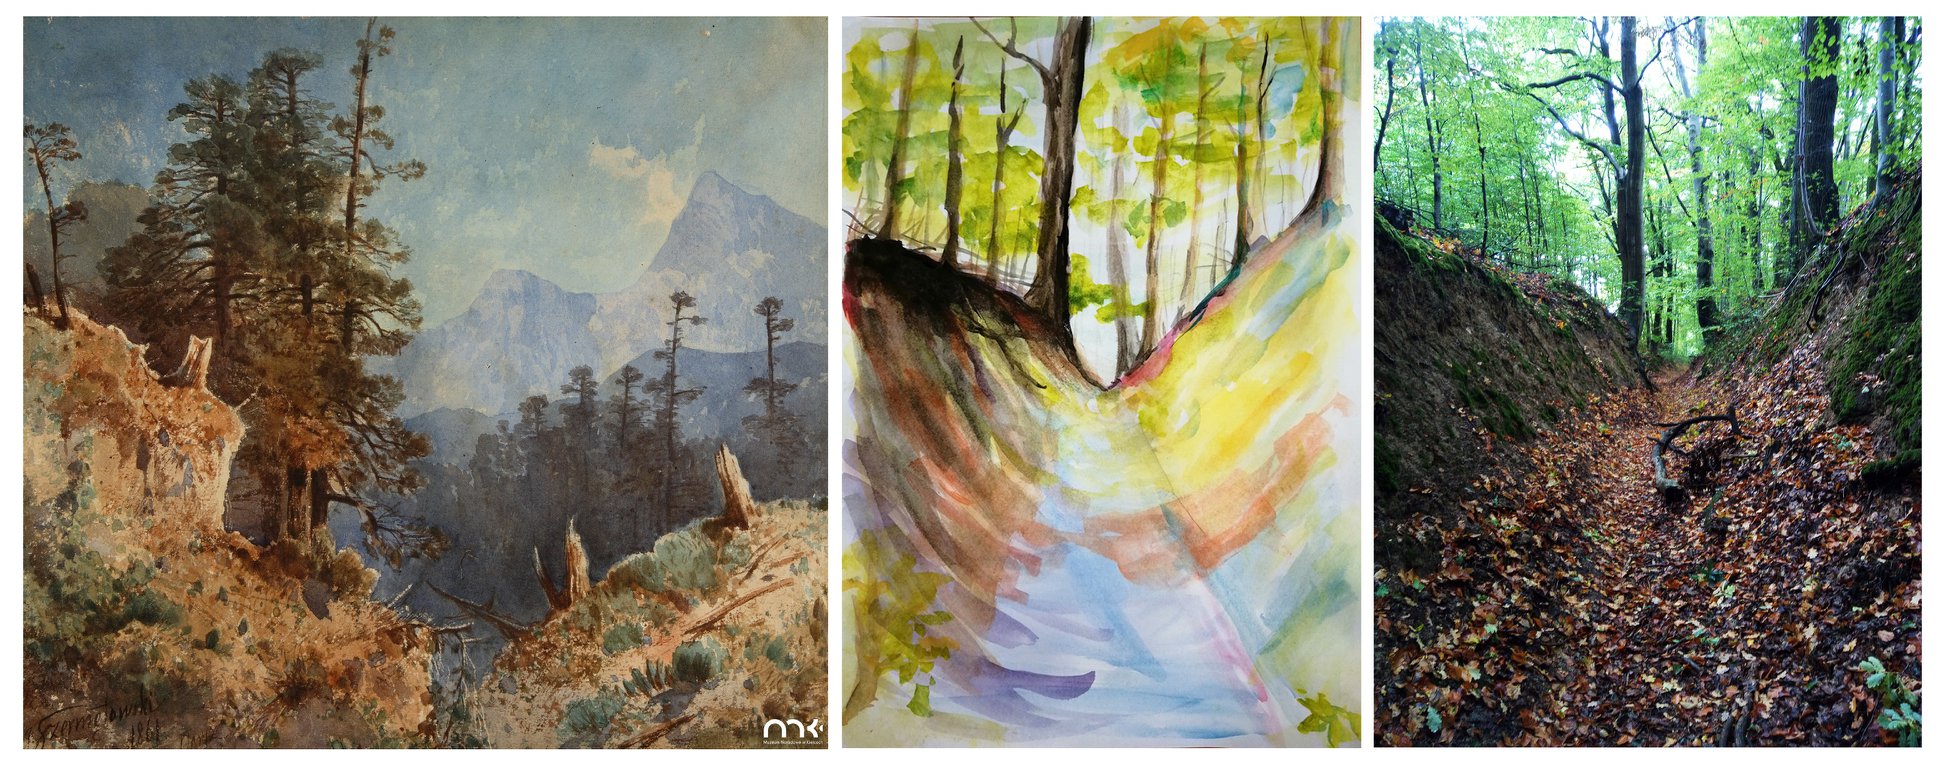 pejzaż, wąwóz, trzy przykłady, obraz Jozefa Szermentowskiego, zdjęcie z rezerwatu Barania Góra i praca w ramch ćwiczenia 